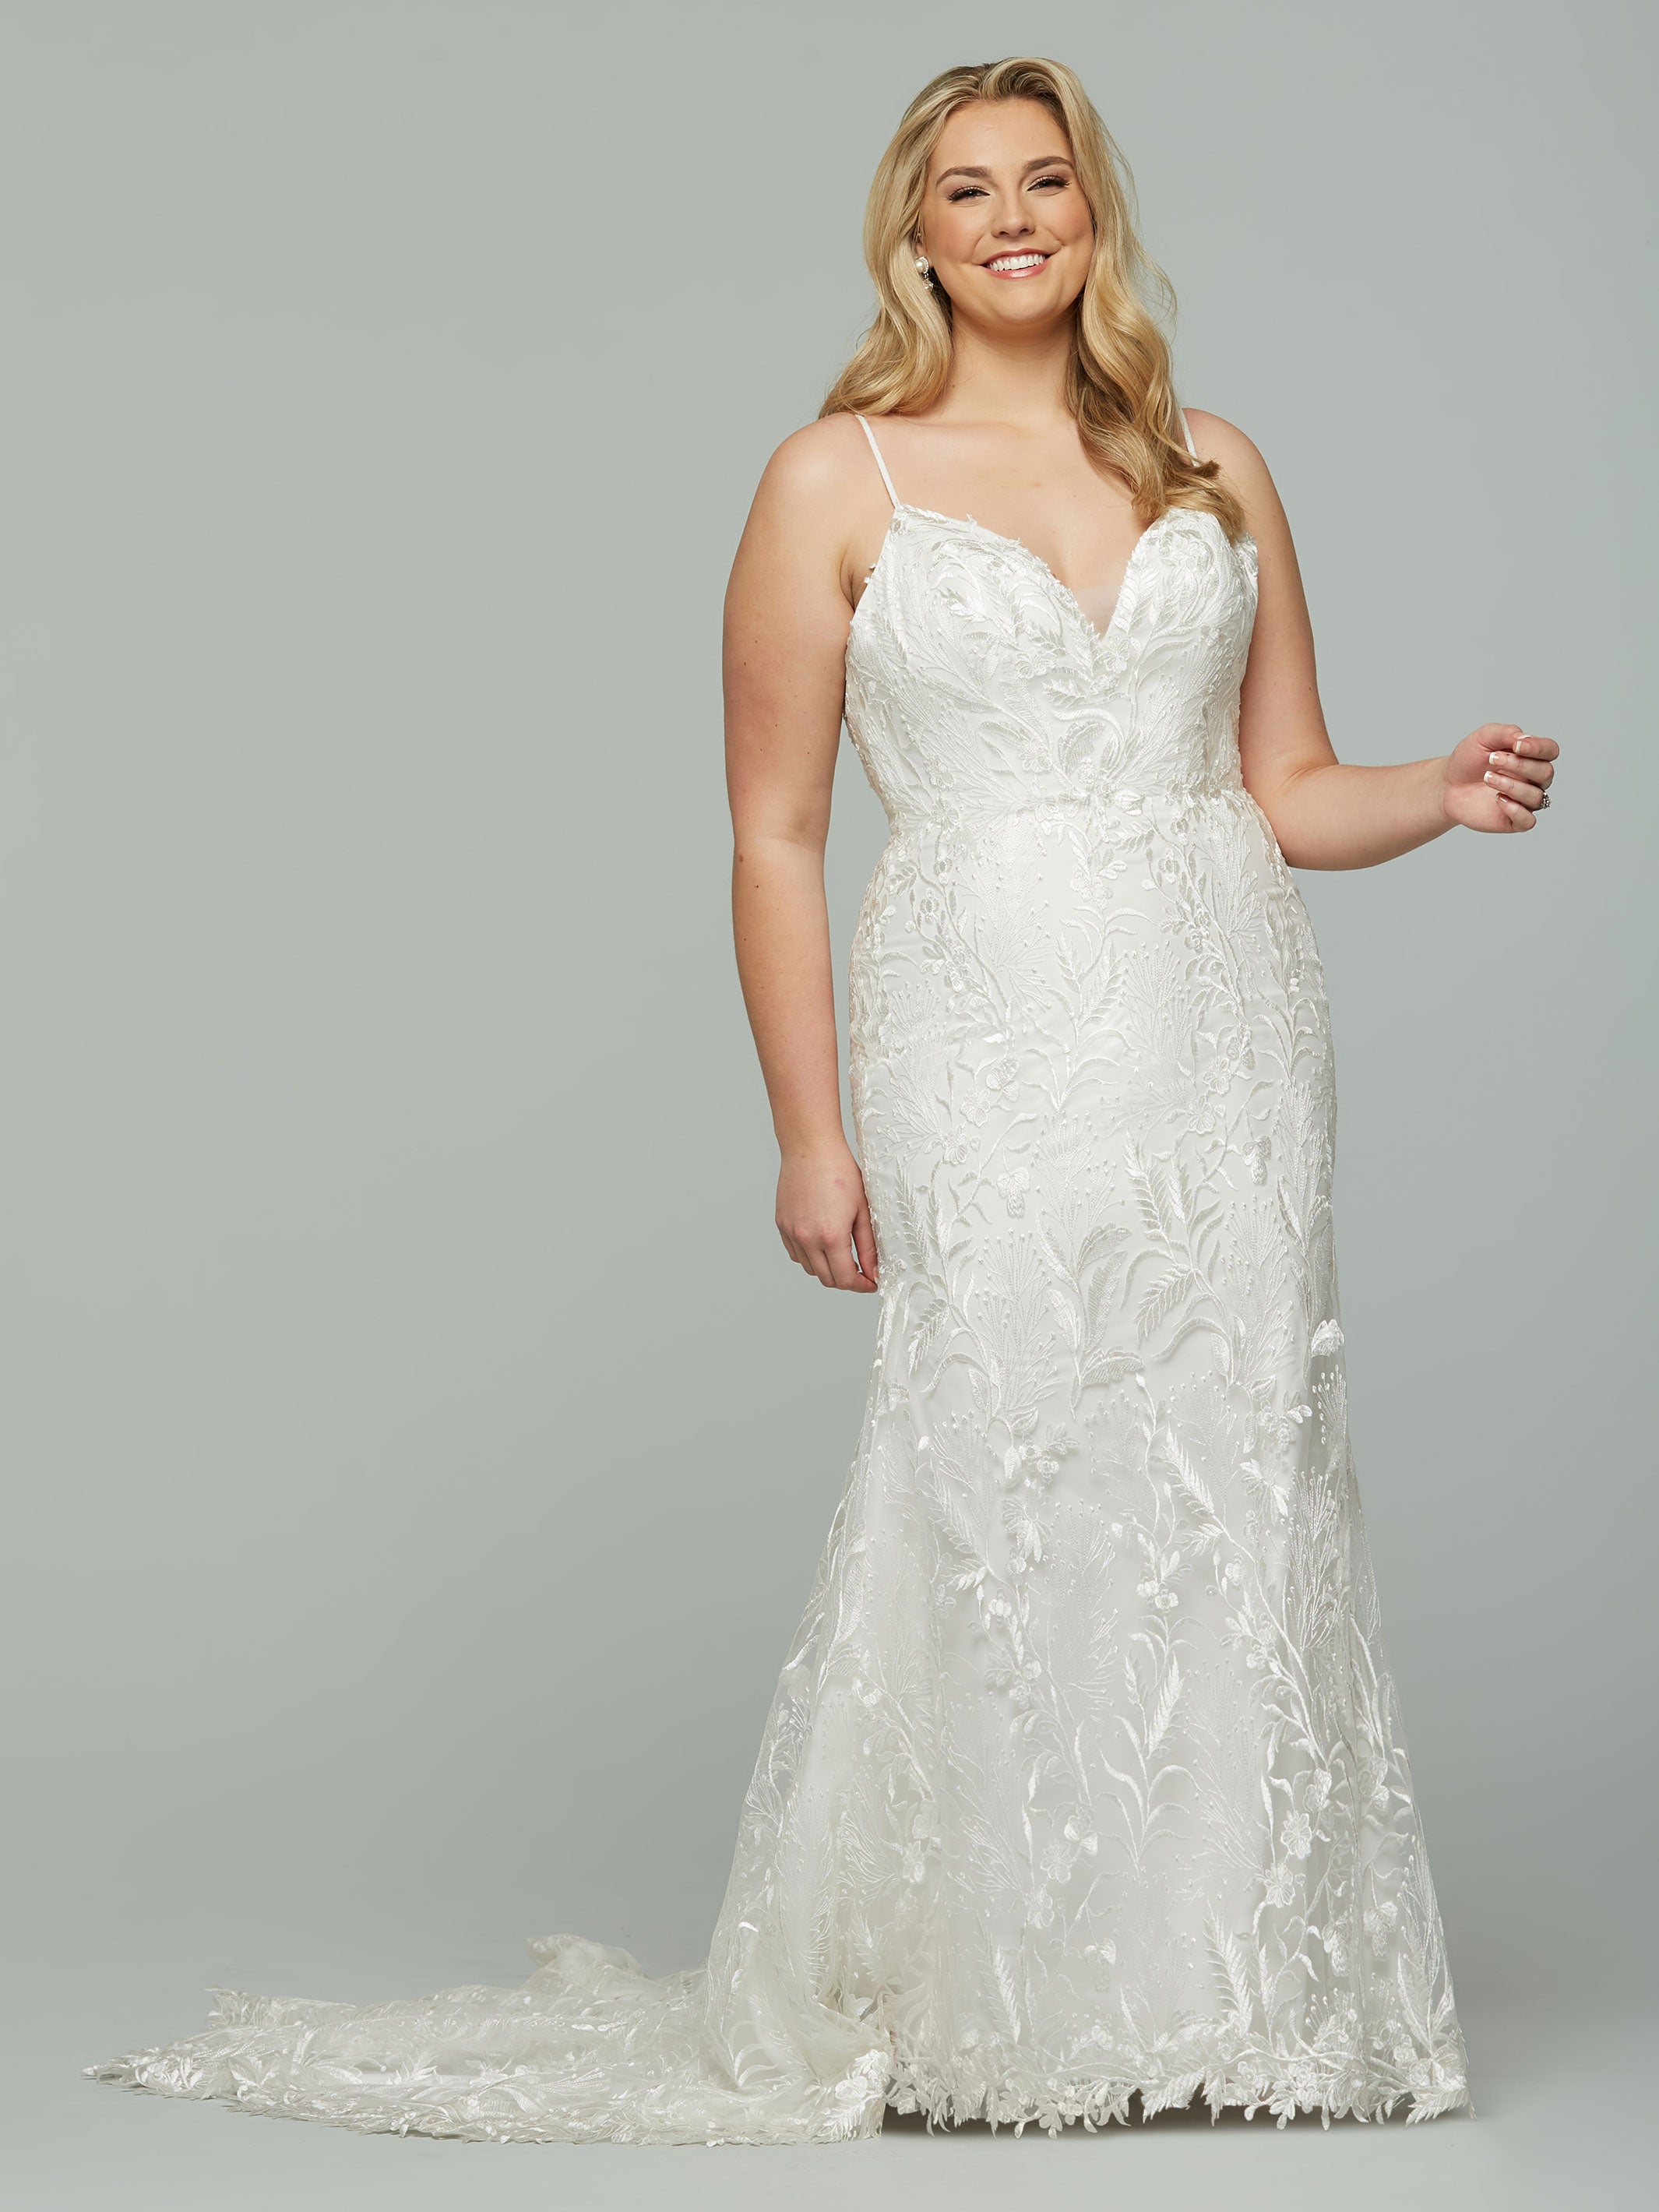 Celine Wedding Dress – Avery Austin